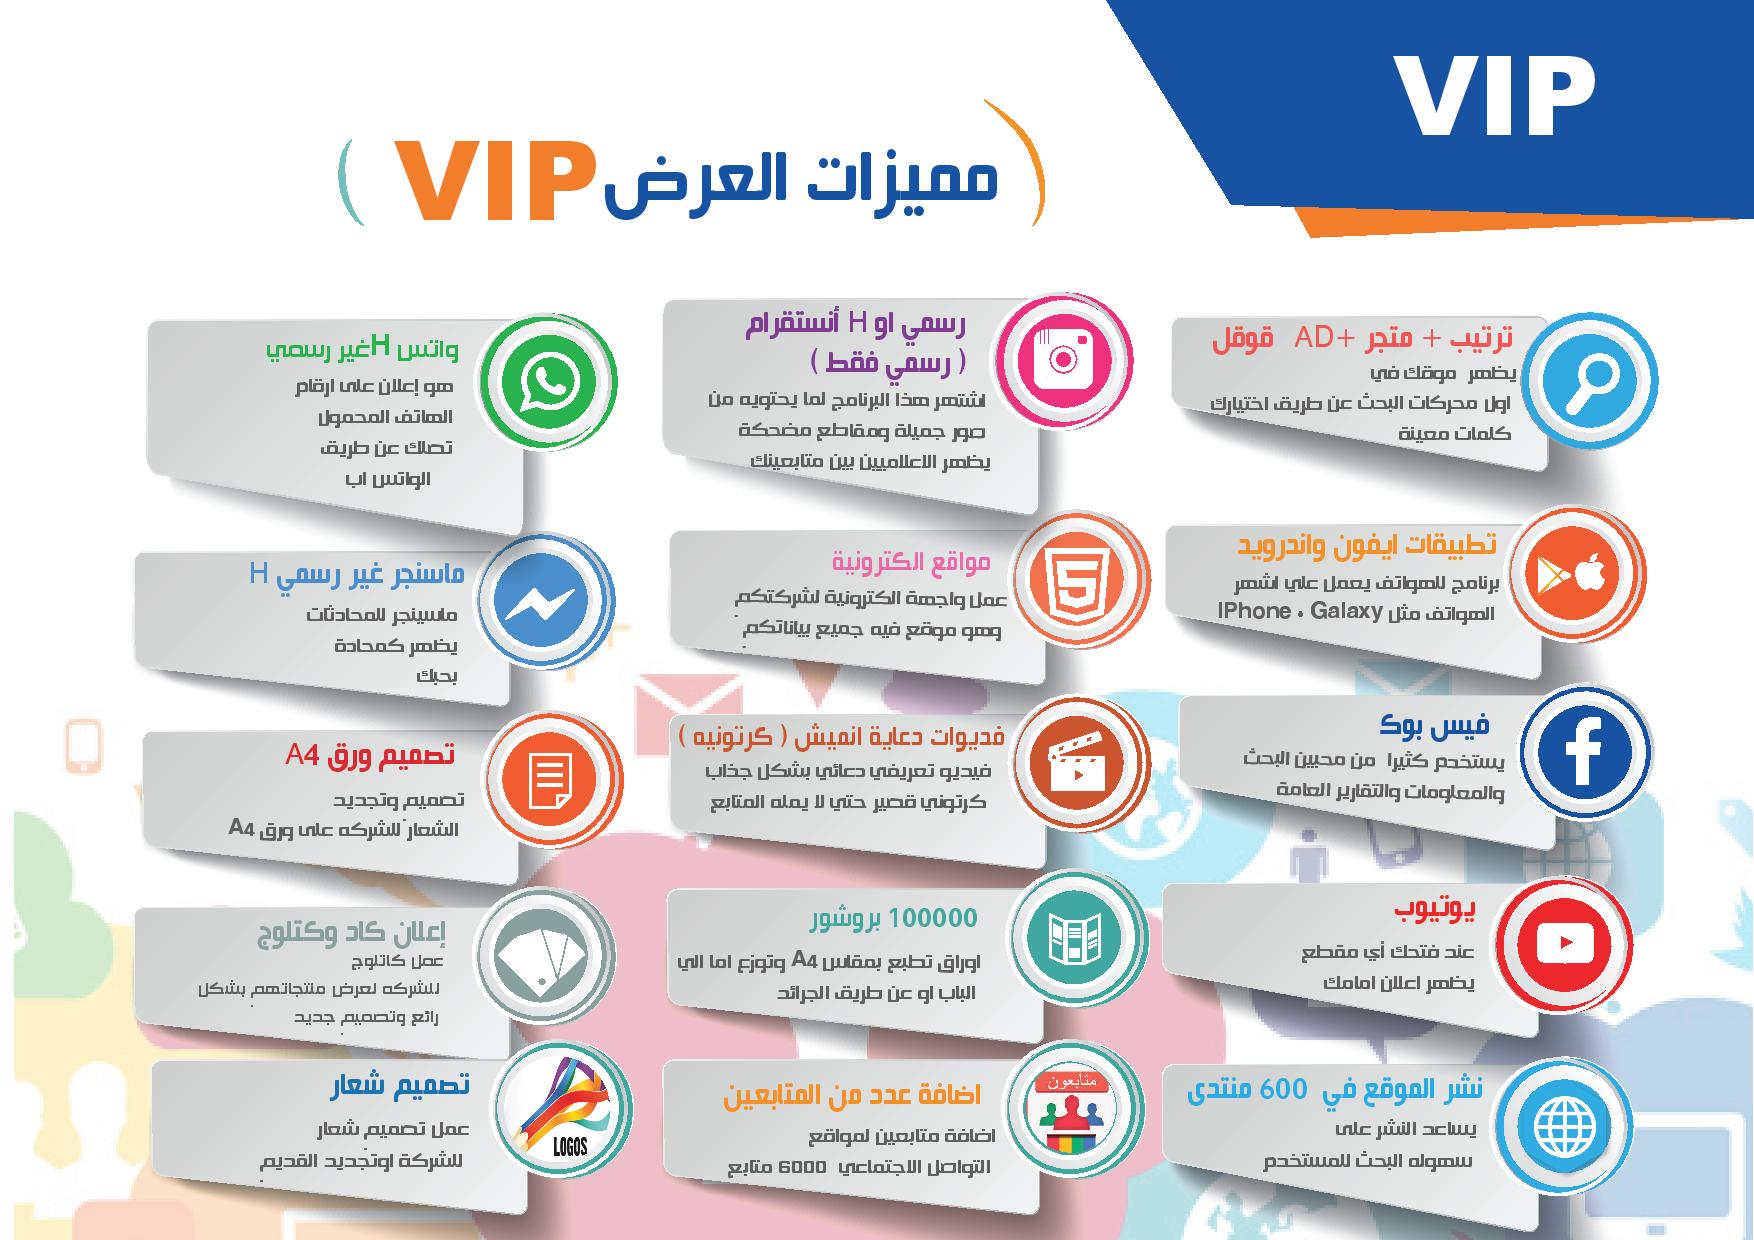 الباقي VIP - التسويق الالكتروني في الكويت ودول الخليج